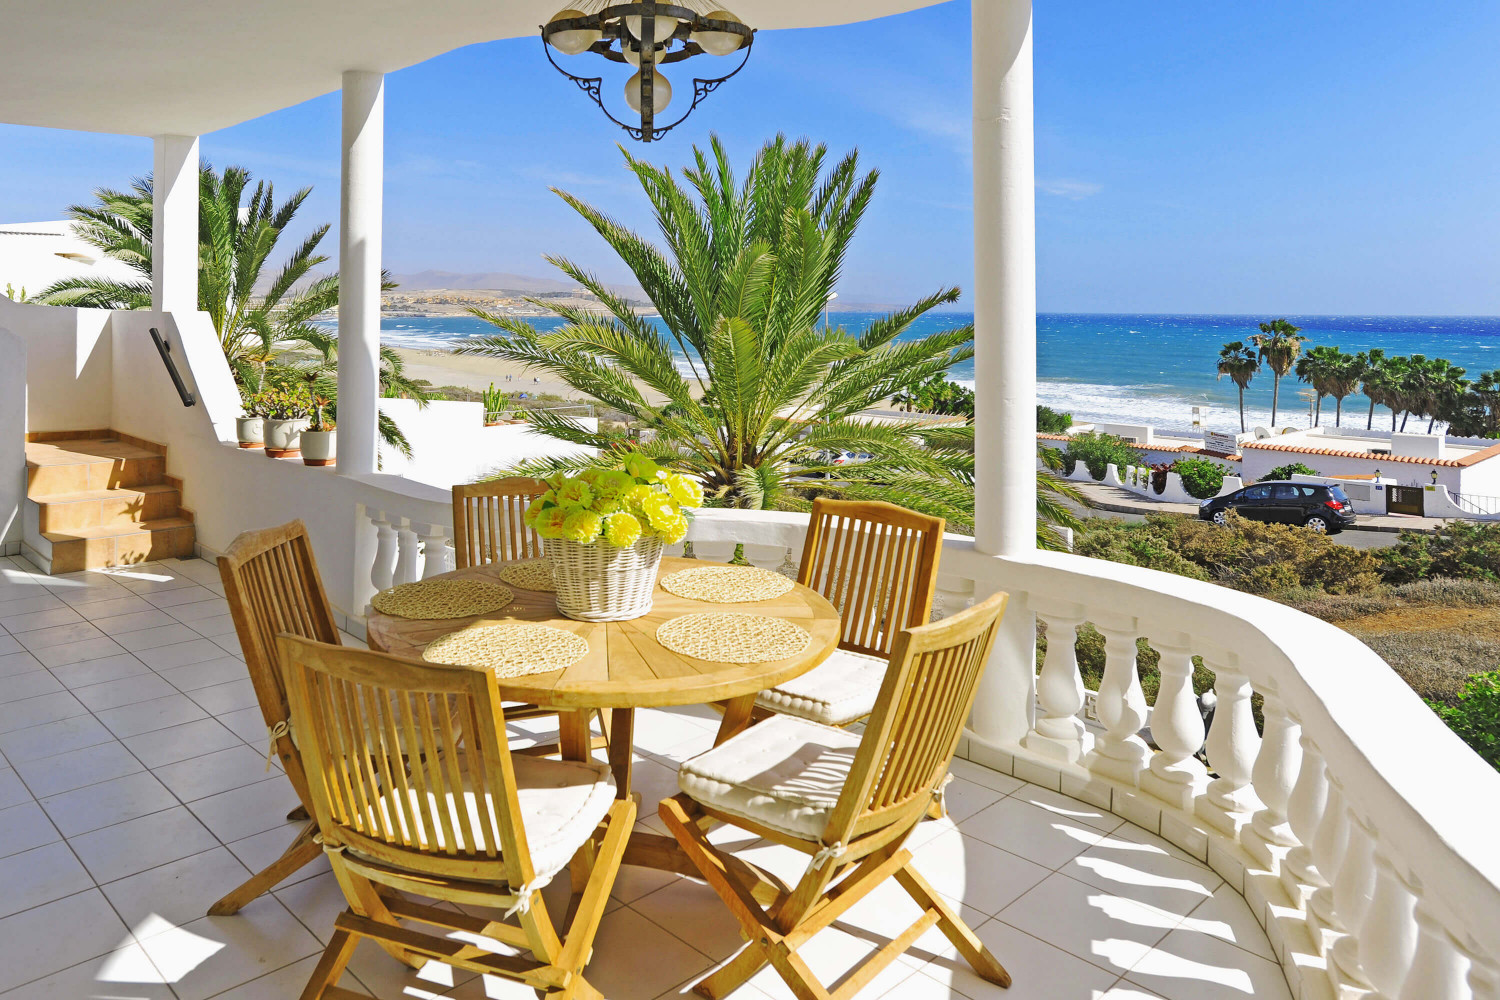 Schöne Villa am Strand in Costa Calma, dekoriert im mediterranen Stil, mit unschlagbarer Aussicht